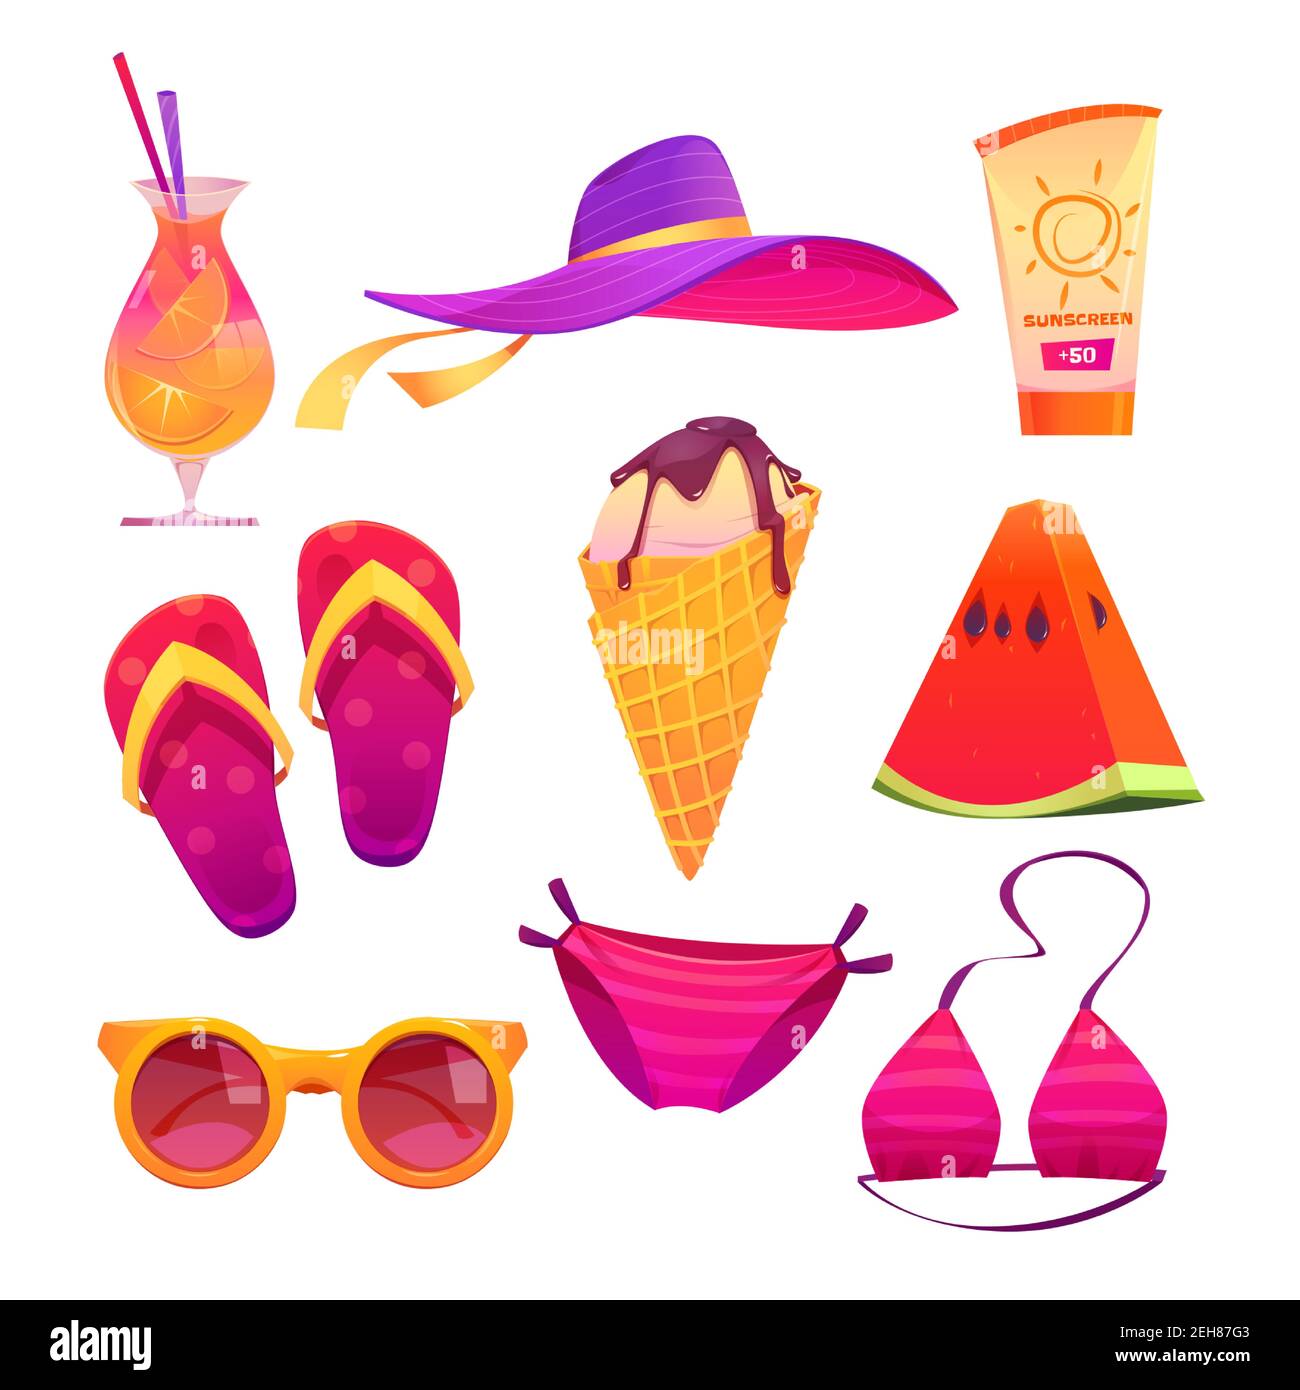 Adorables pegatinas de verano para chicas, helado de dibujos animados,  bañadores de bikini rosa, sandía, cóctel con rodajas de naranja, sombrero  de playa, gafas de sol y chanclas de colores, crema de